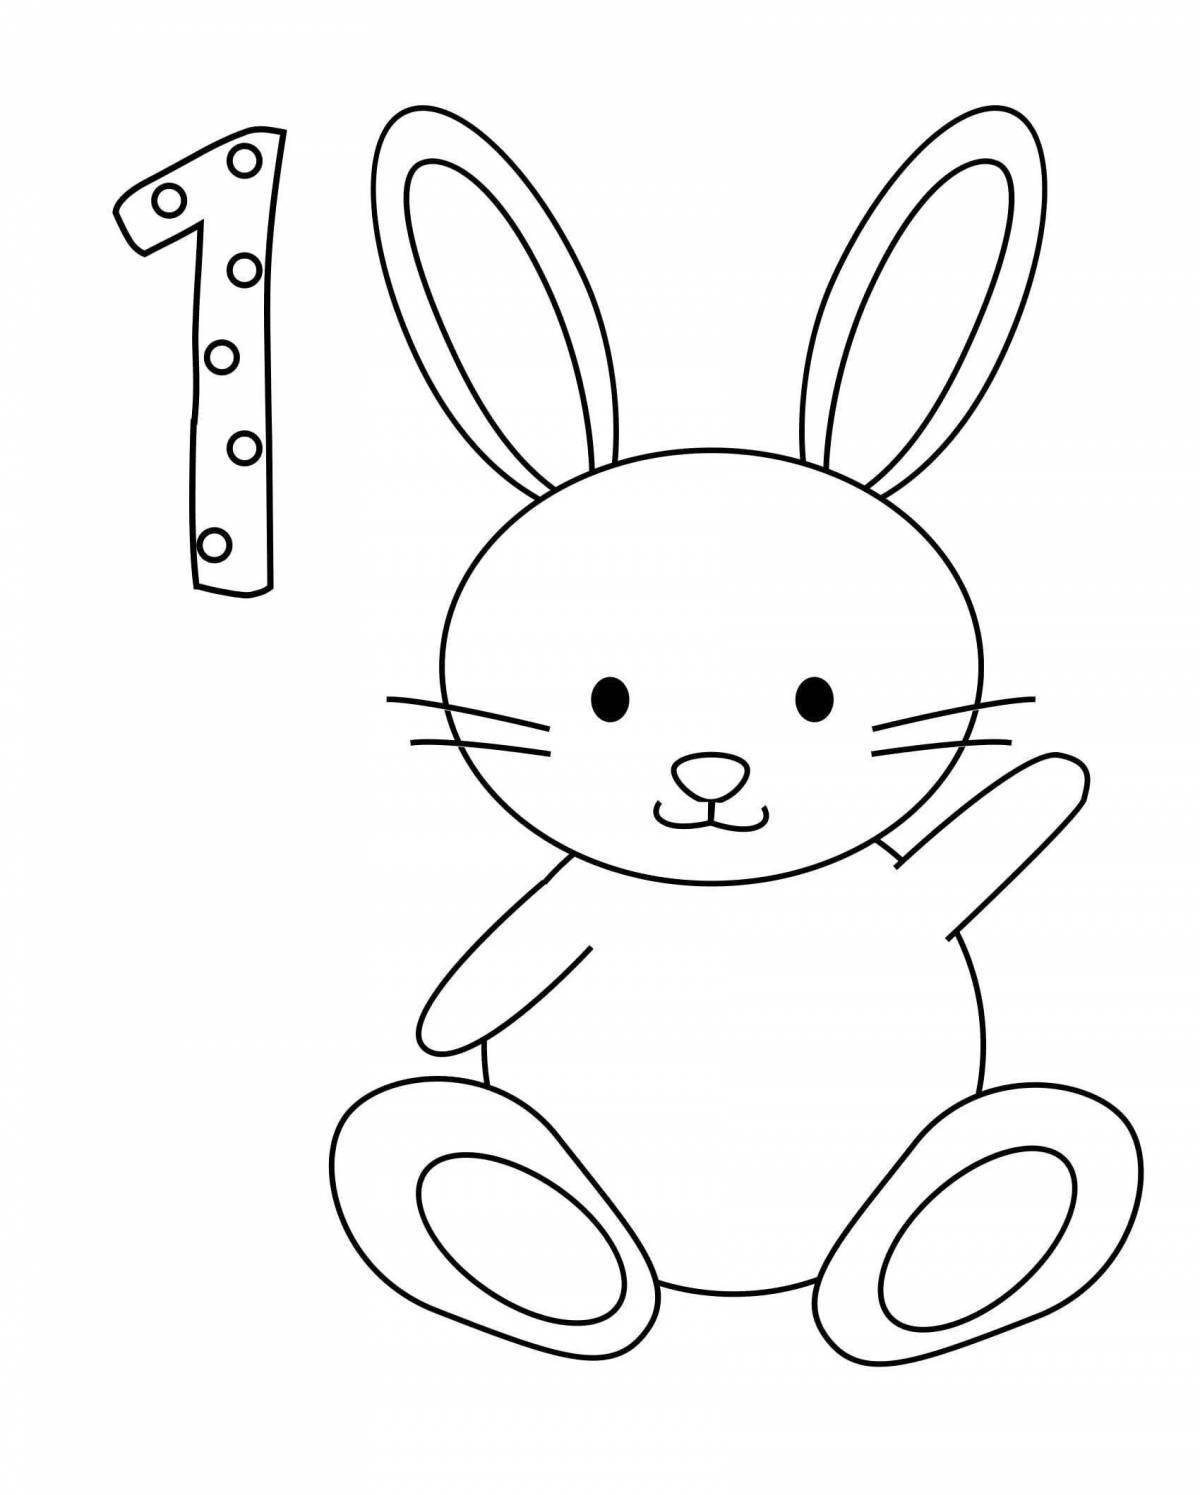 Сказочная раскраска кролик для детей 2-3 лет